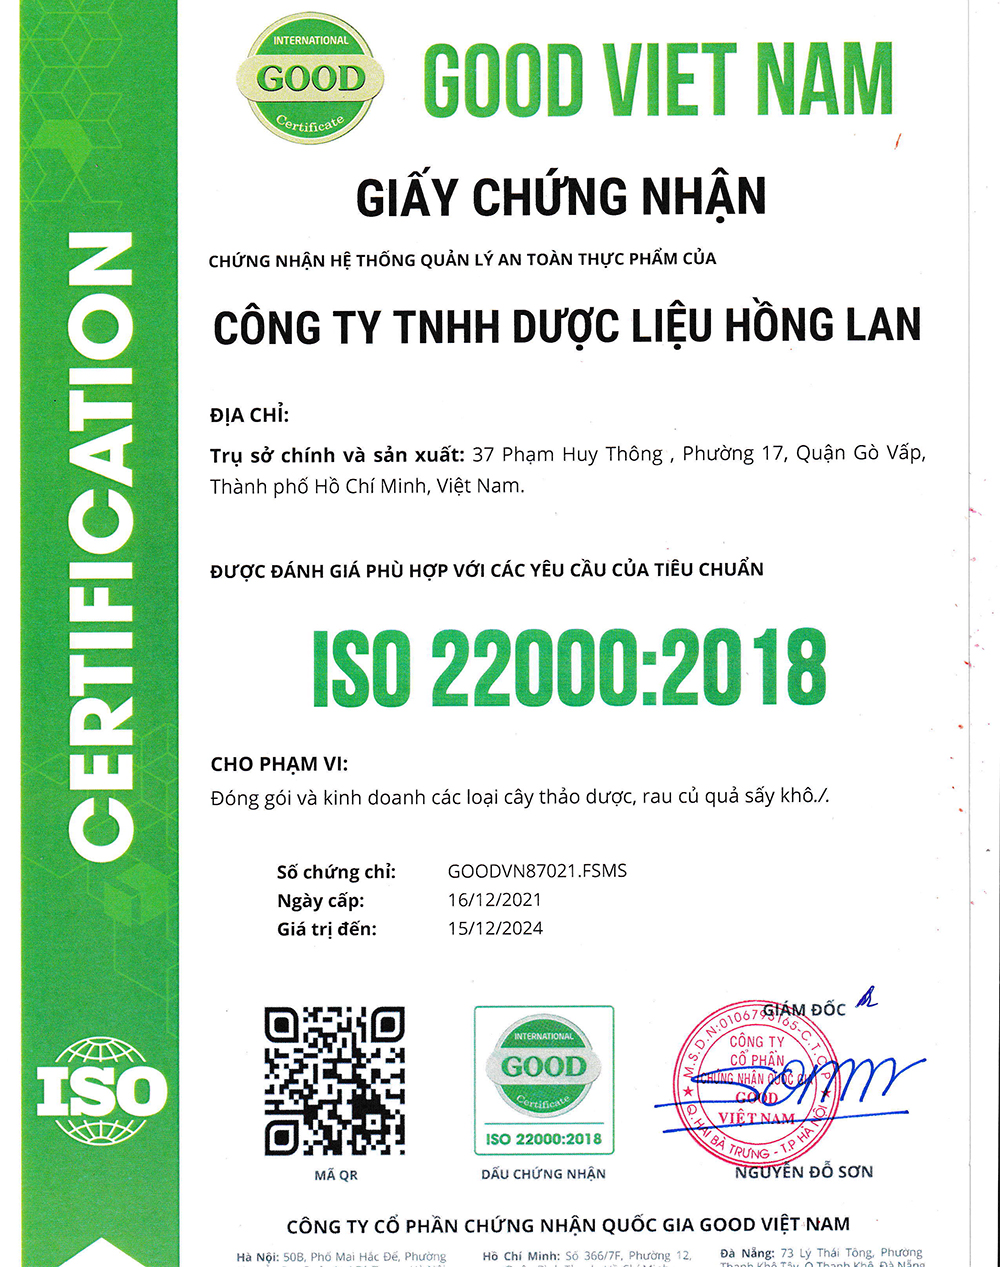 Trà túi lọc Tầm Bóp (Thù Lù) được sản xuất bởi Công ty TNHH Dược Liệu Hồng Lan theo hệ thống quản lý an toàn thực phẩm ISO 22000:2018 được cấp bởi công ty cổ phần chứng nhận Quốc Gia Good Việt Nam (Good Viet Nam Certification Joint Stock Company)